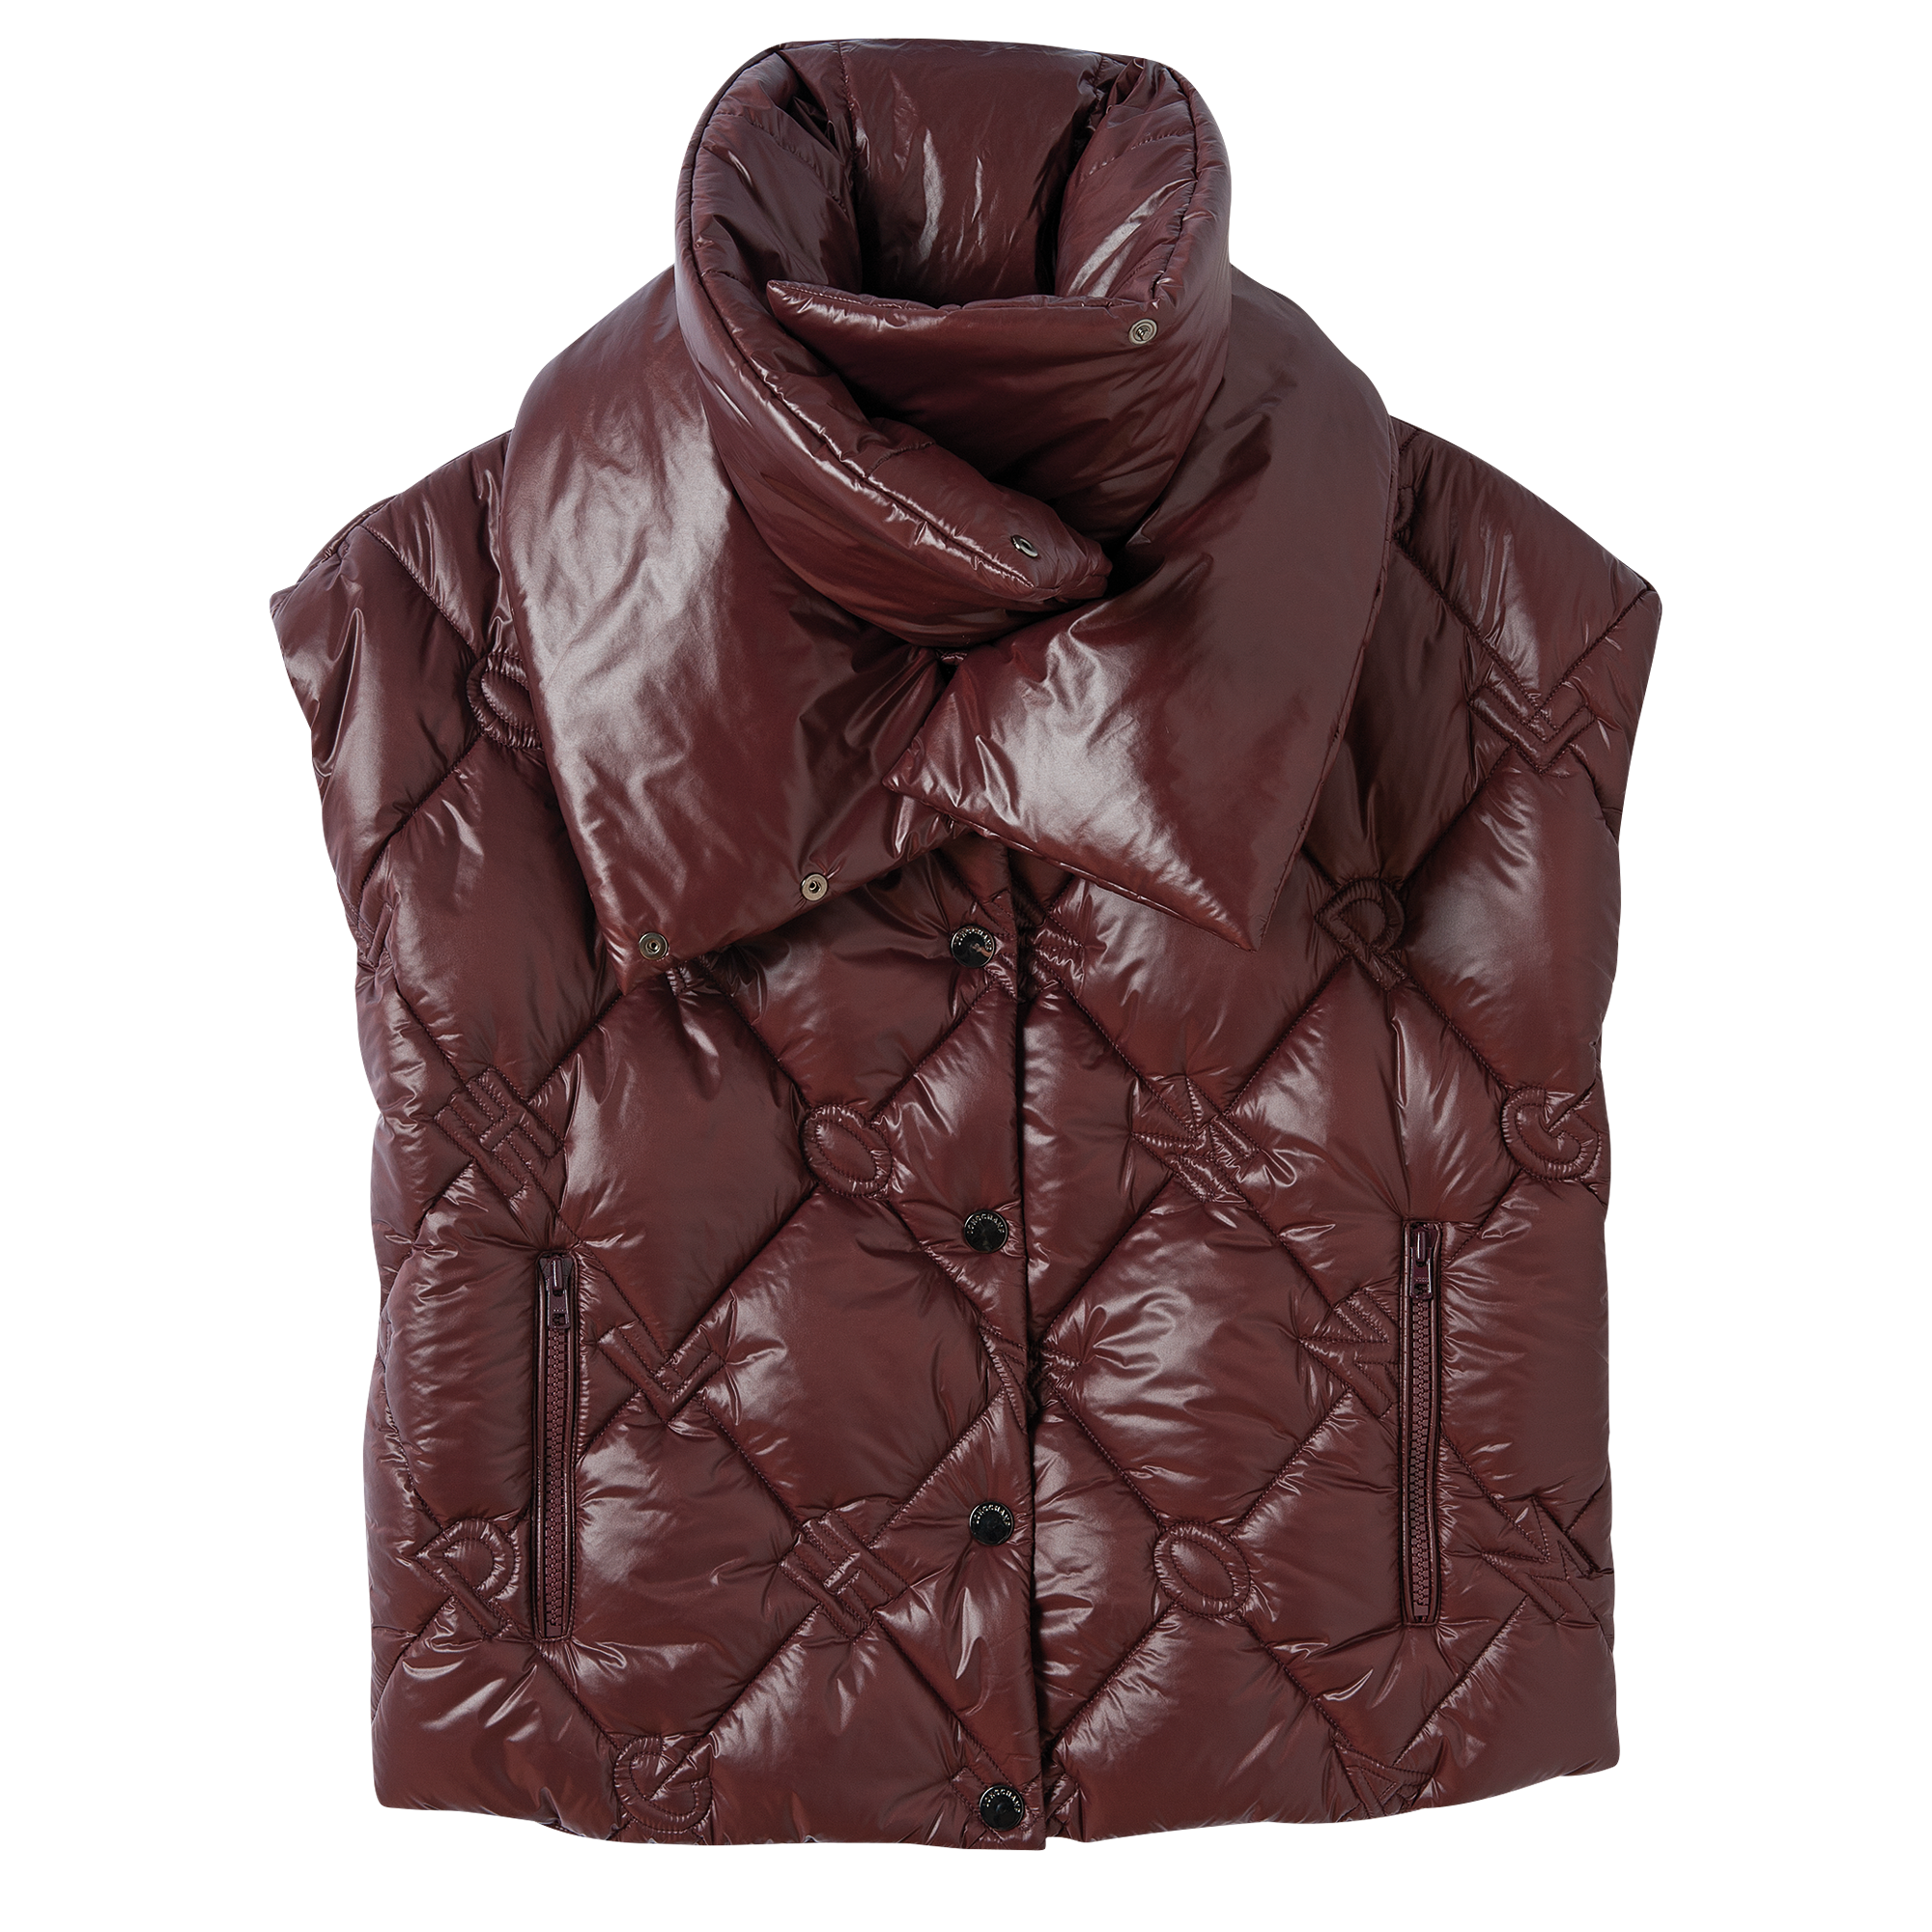 longchamp leather jacket